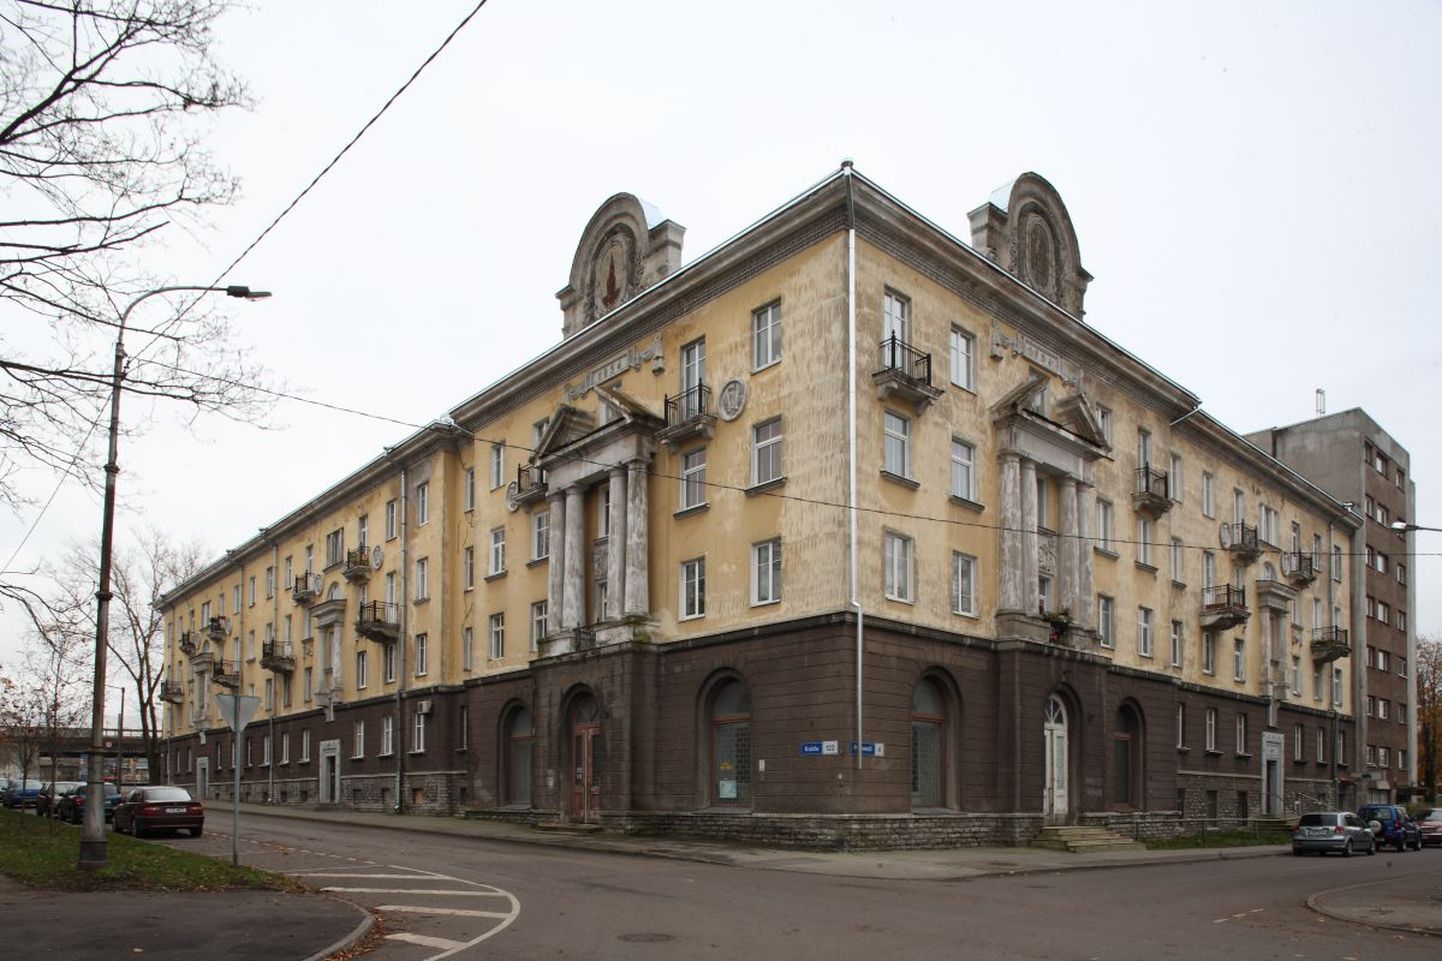 Stalinistliku arhitektuuri üks eredamaid näiteid - elamu Koidu tn 122.